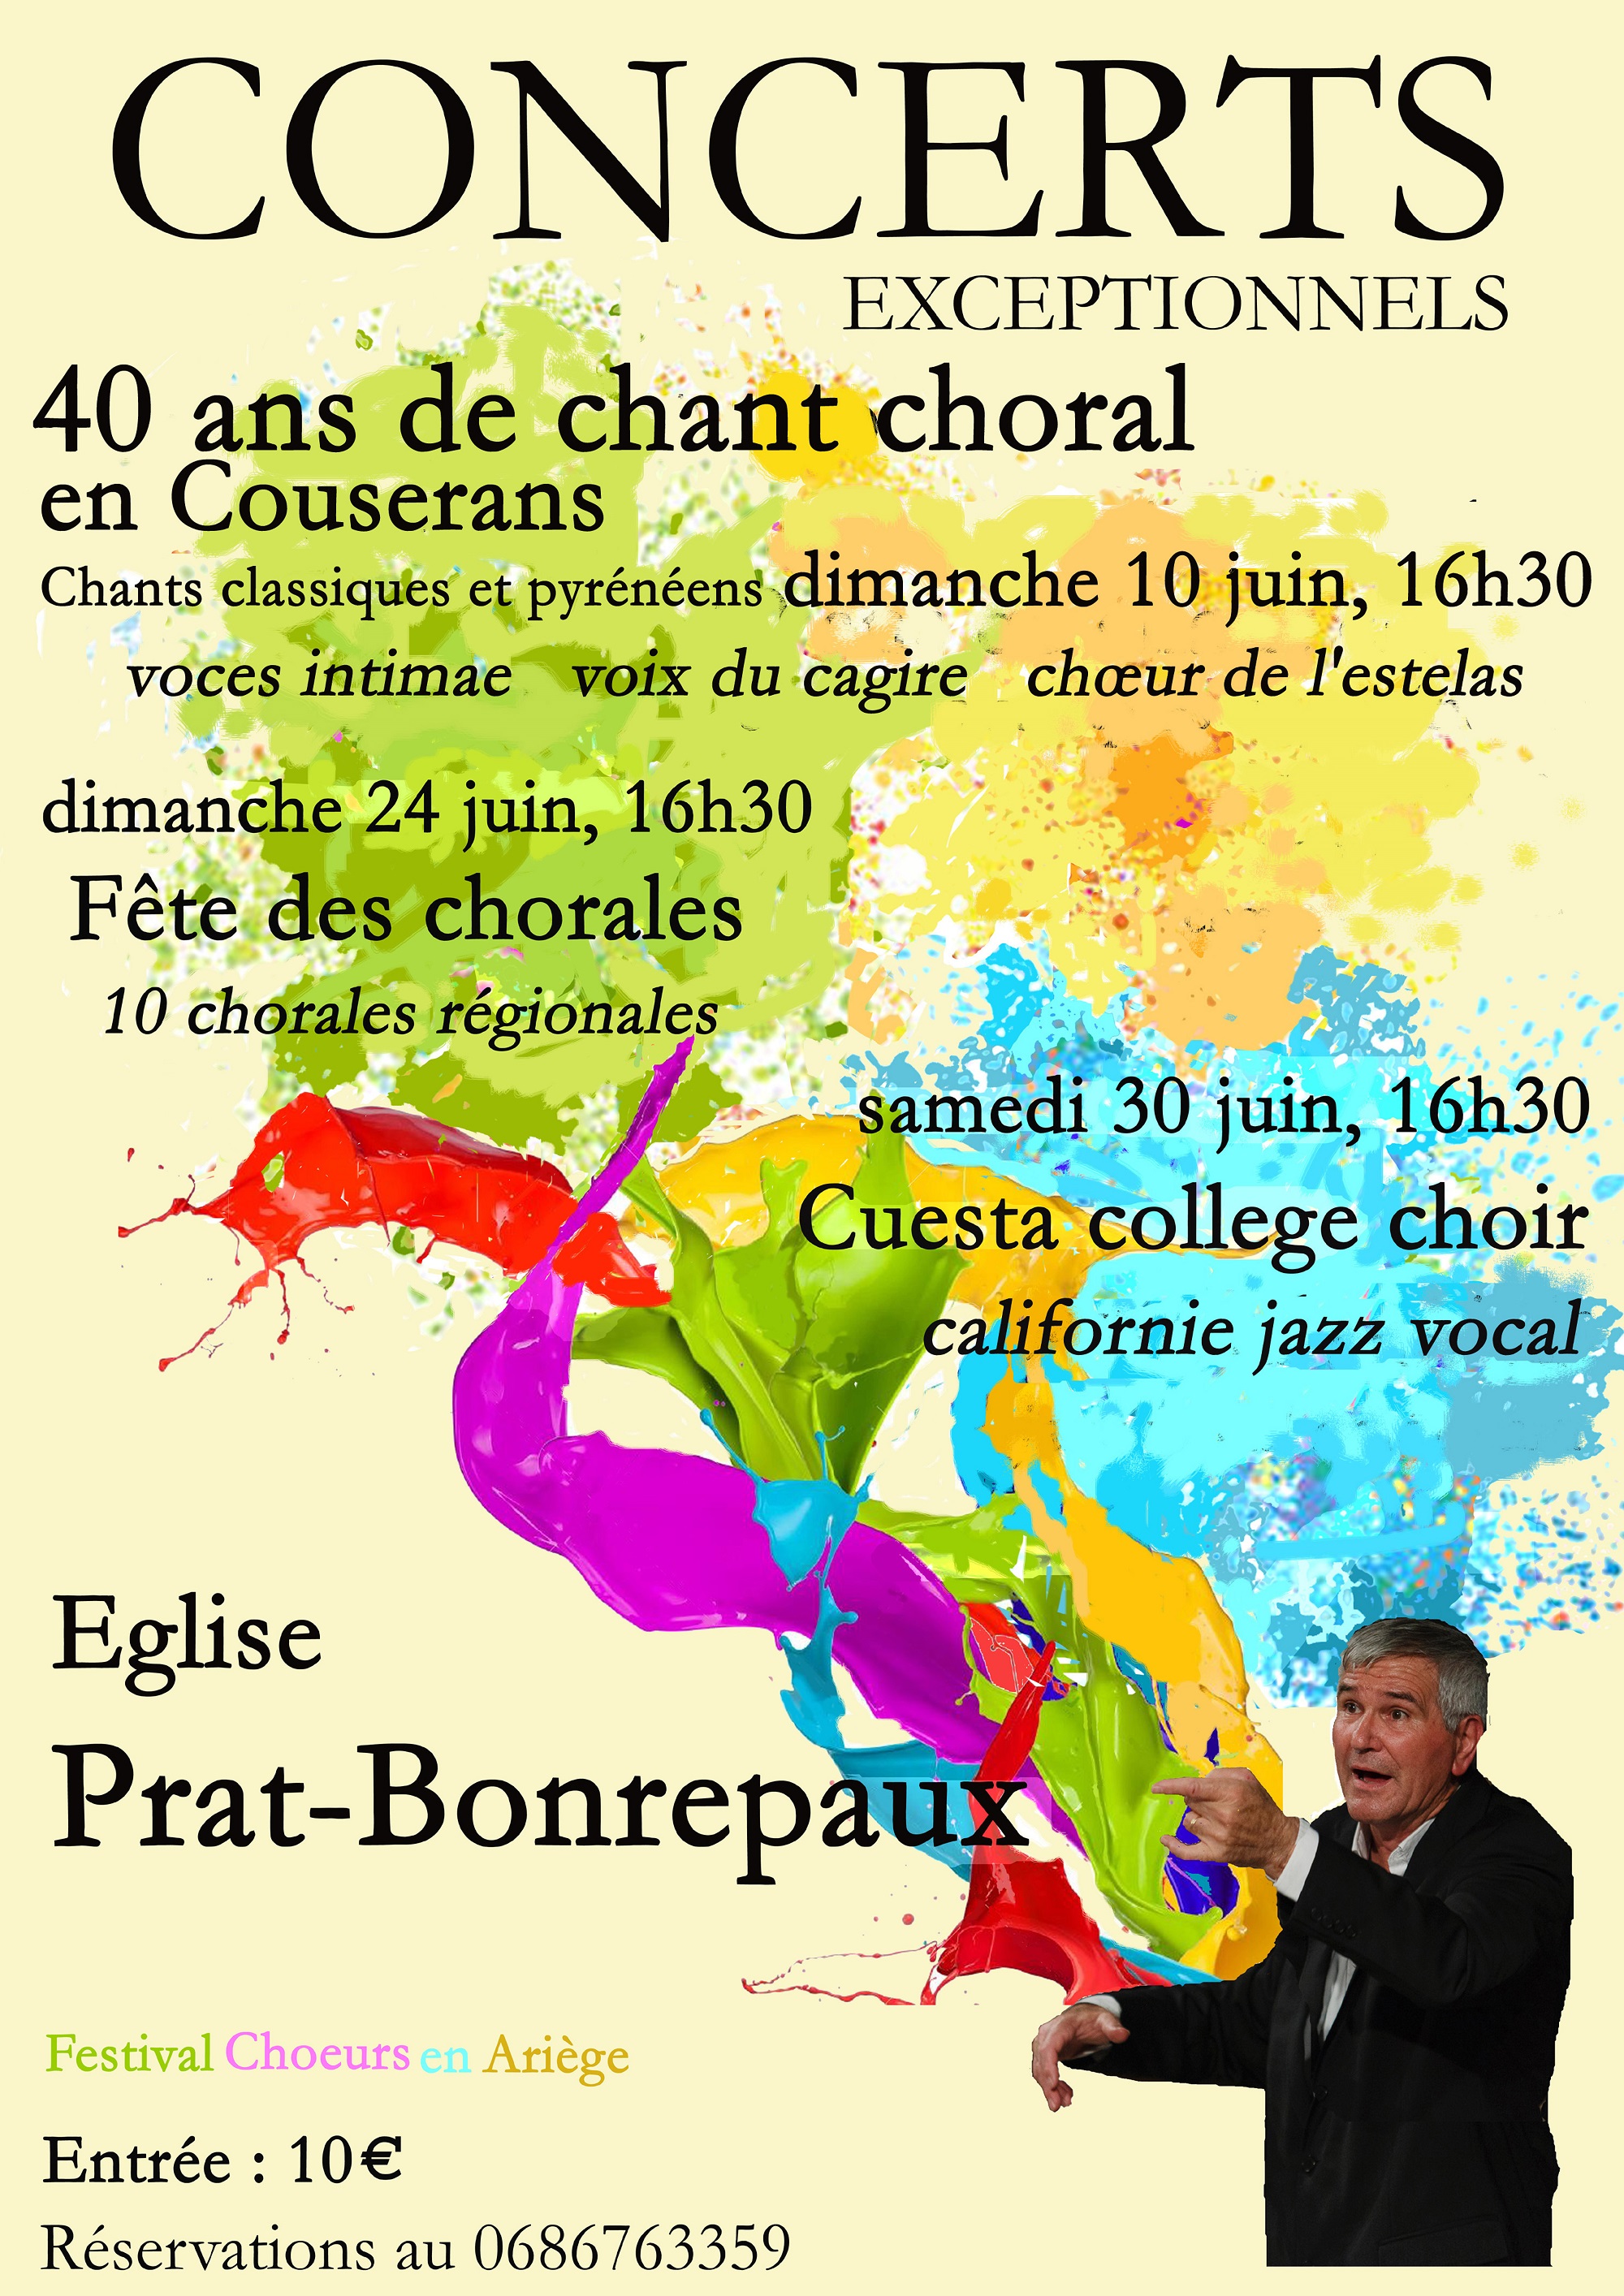 40 ans de chant choral en Couserans, du 10 juin au 10 juillet 2018